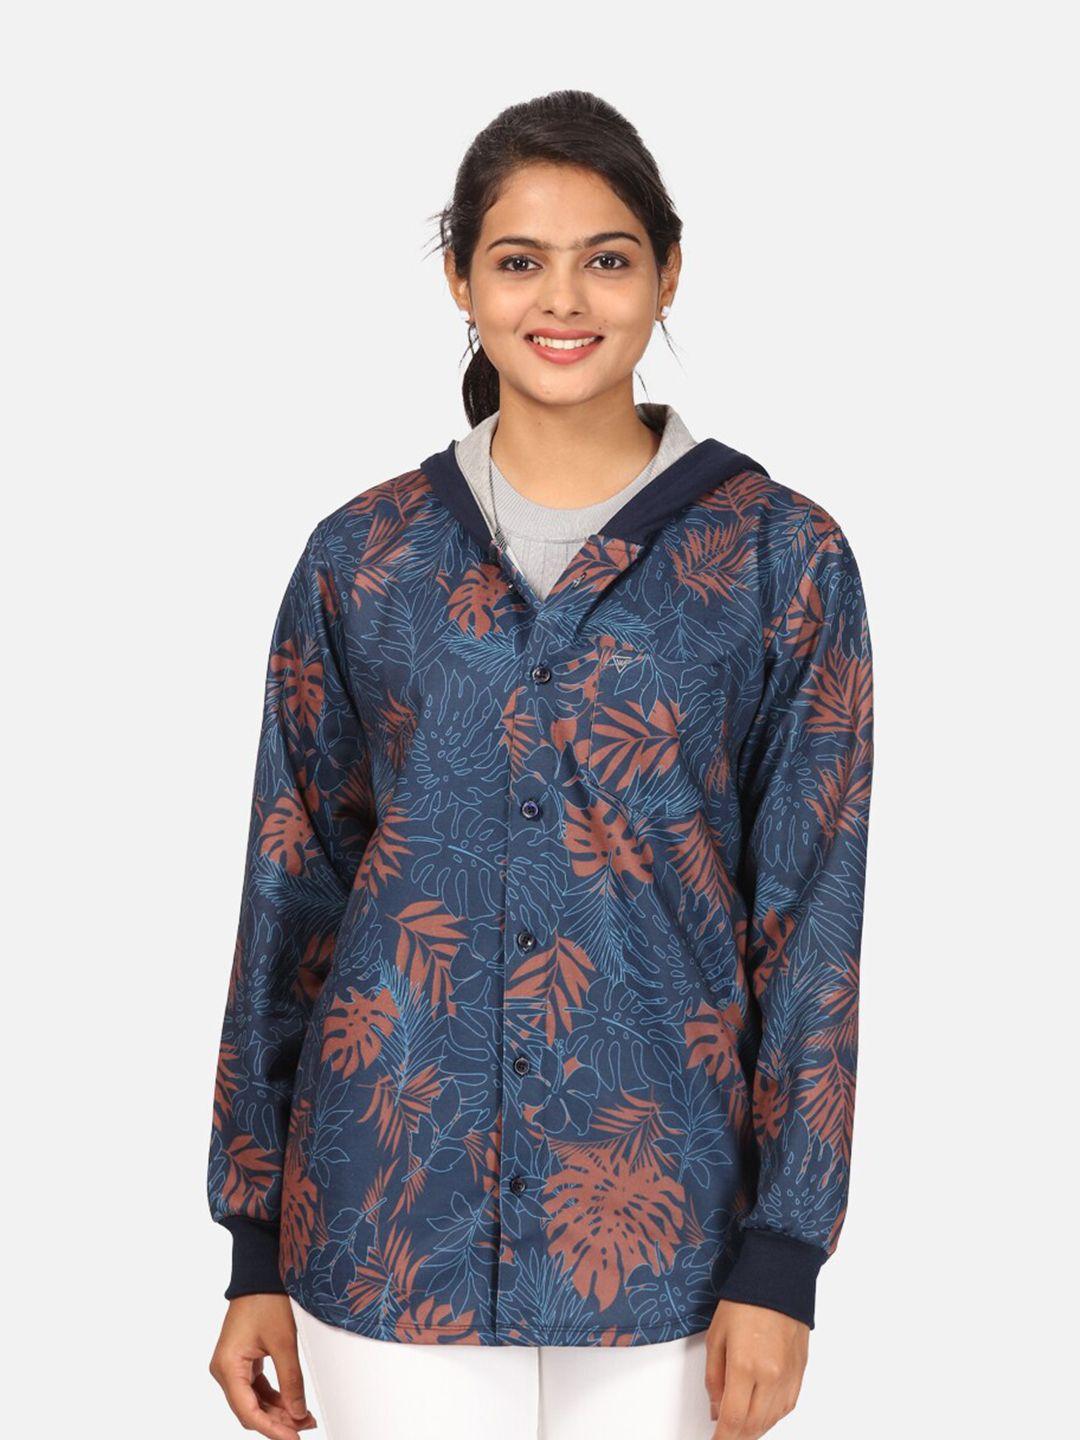 hellcat-women-navy-blue-printed-hooded-sweatshirt